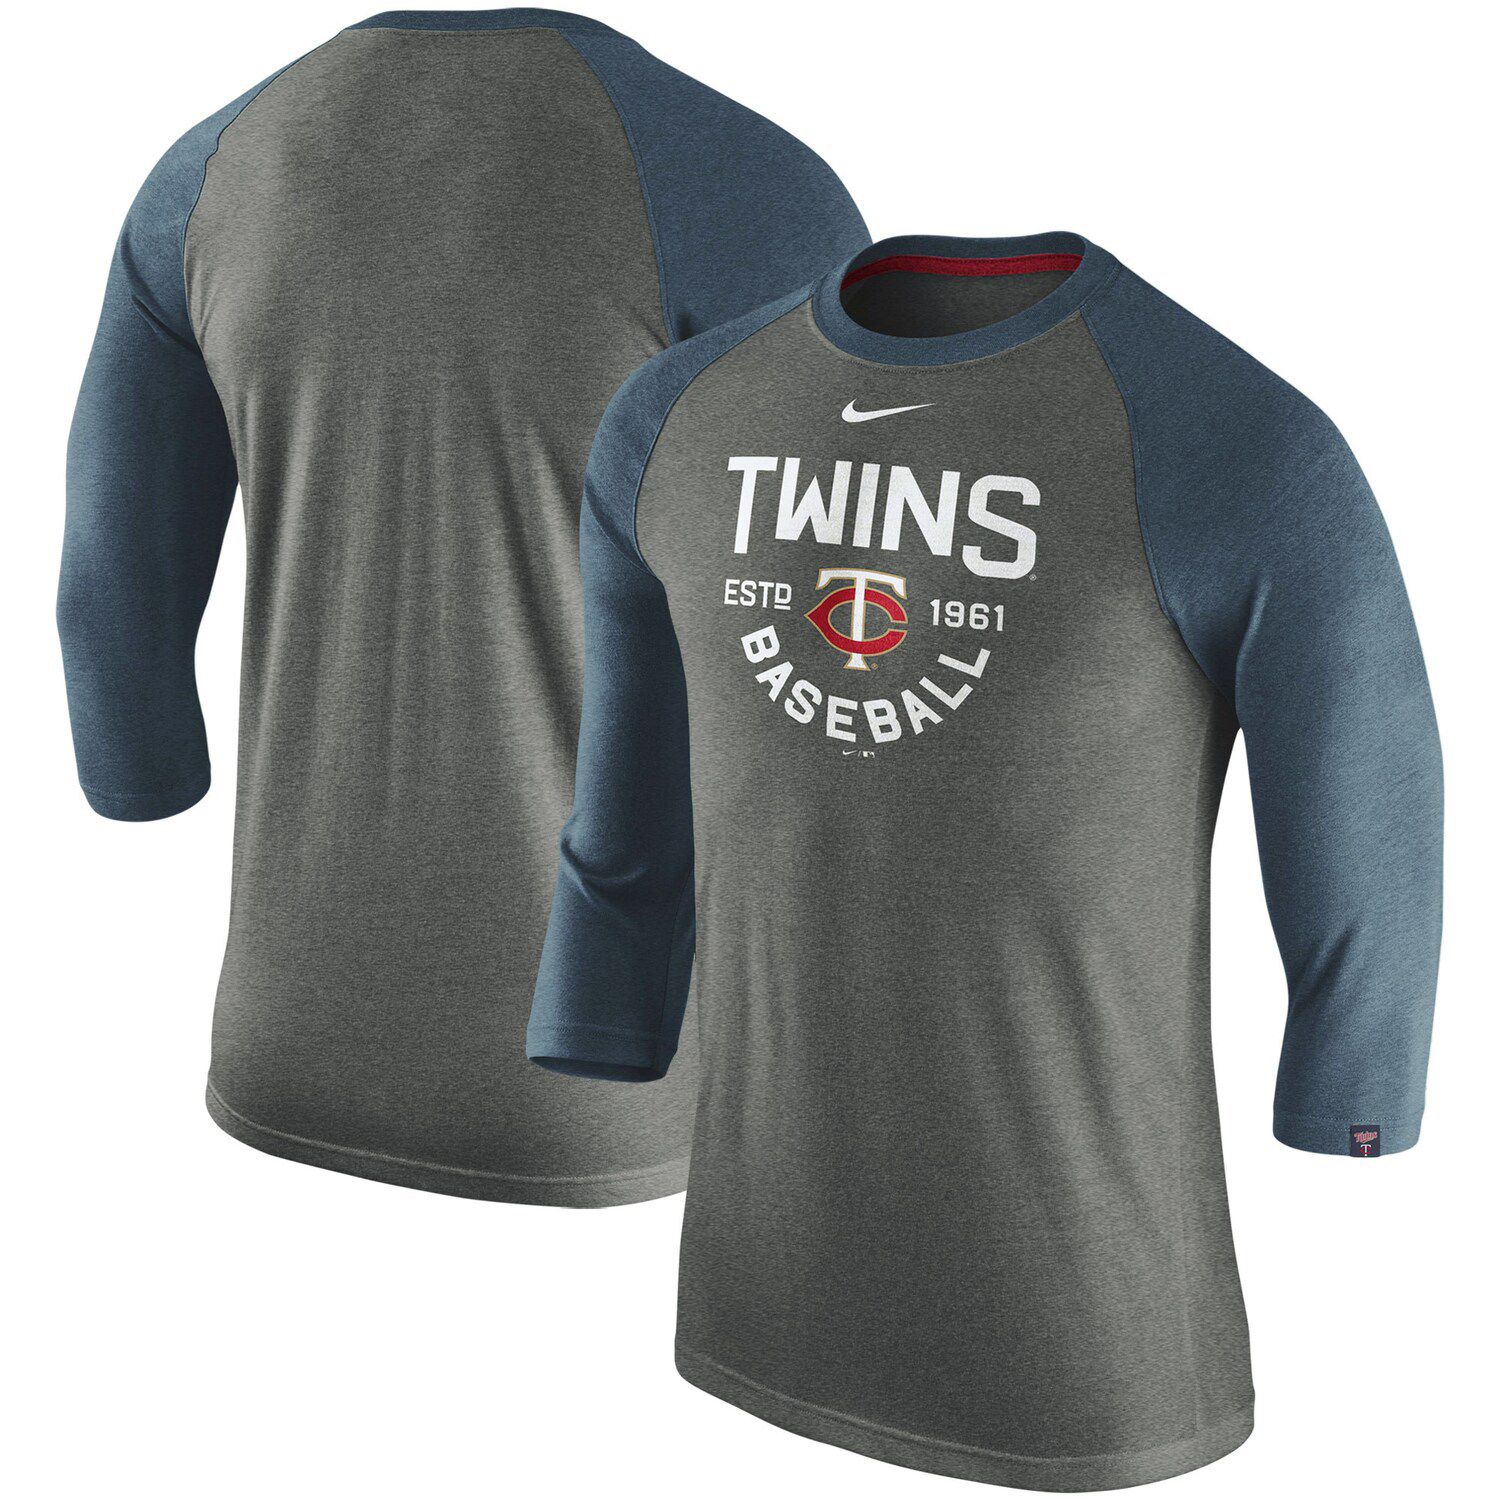 minnesota twins 3 4 sleeve shirts